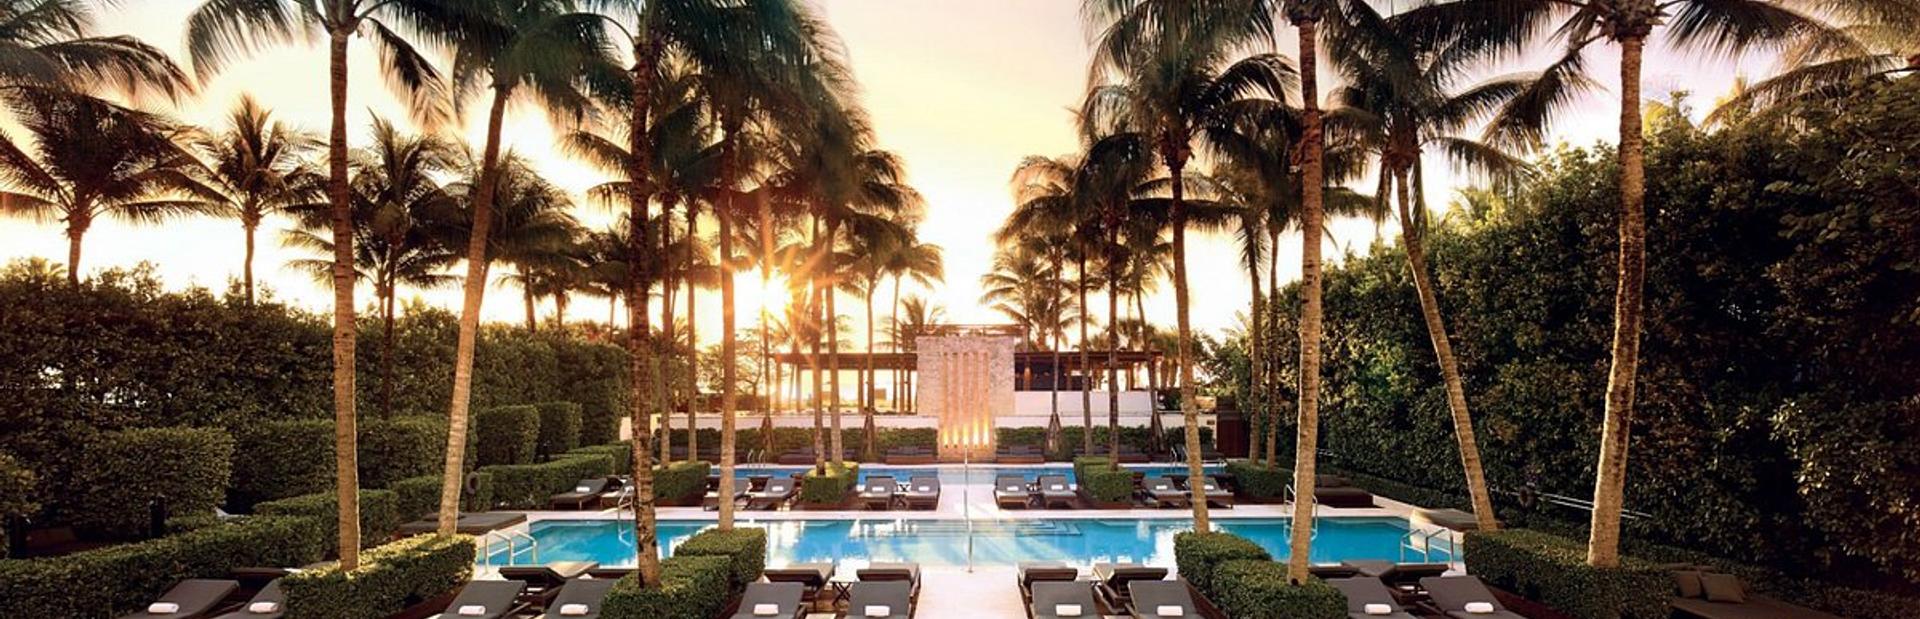 The Setai Miami Beach Image 1